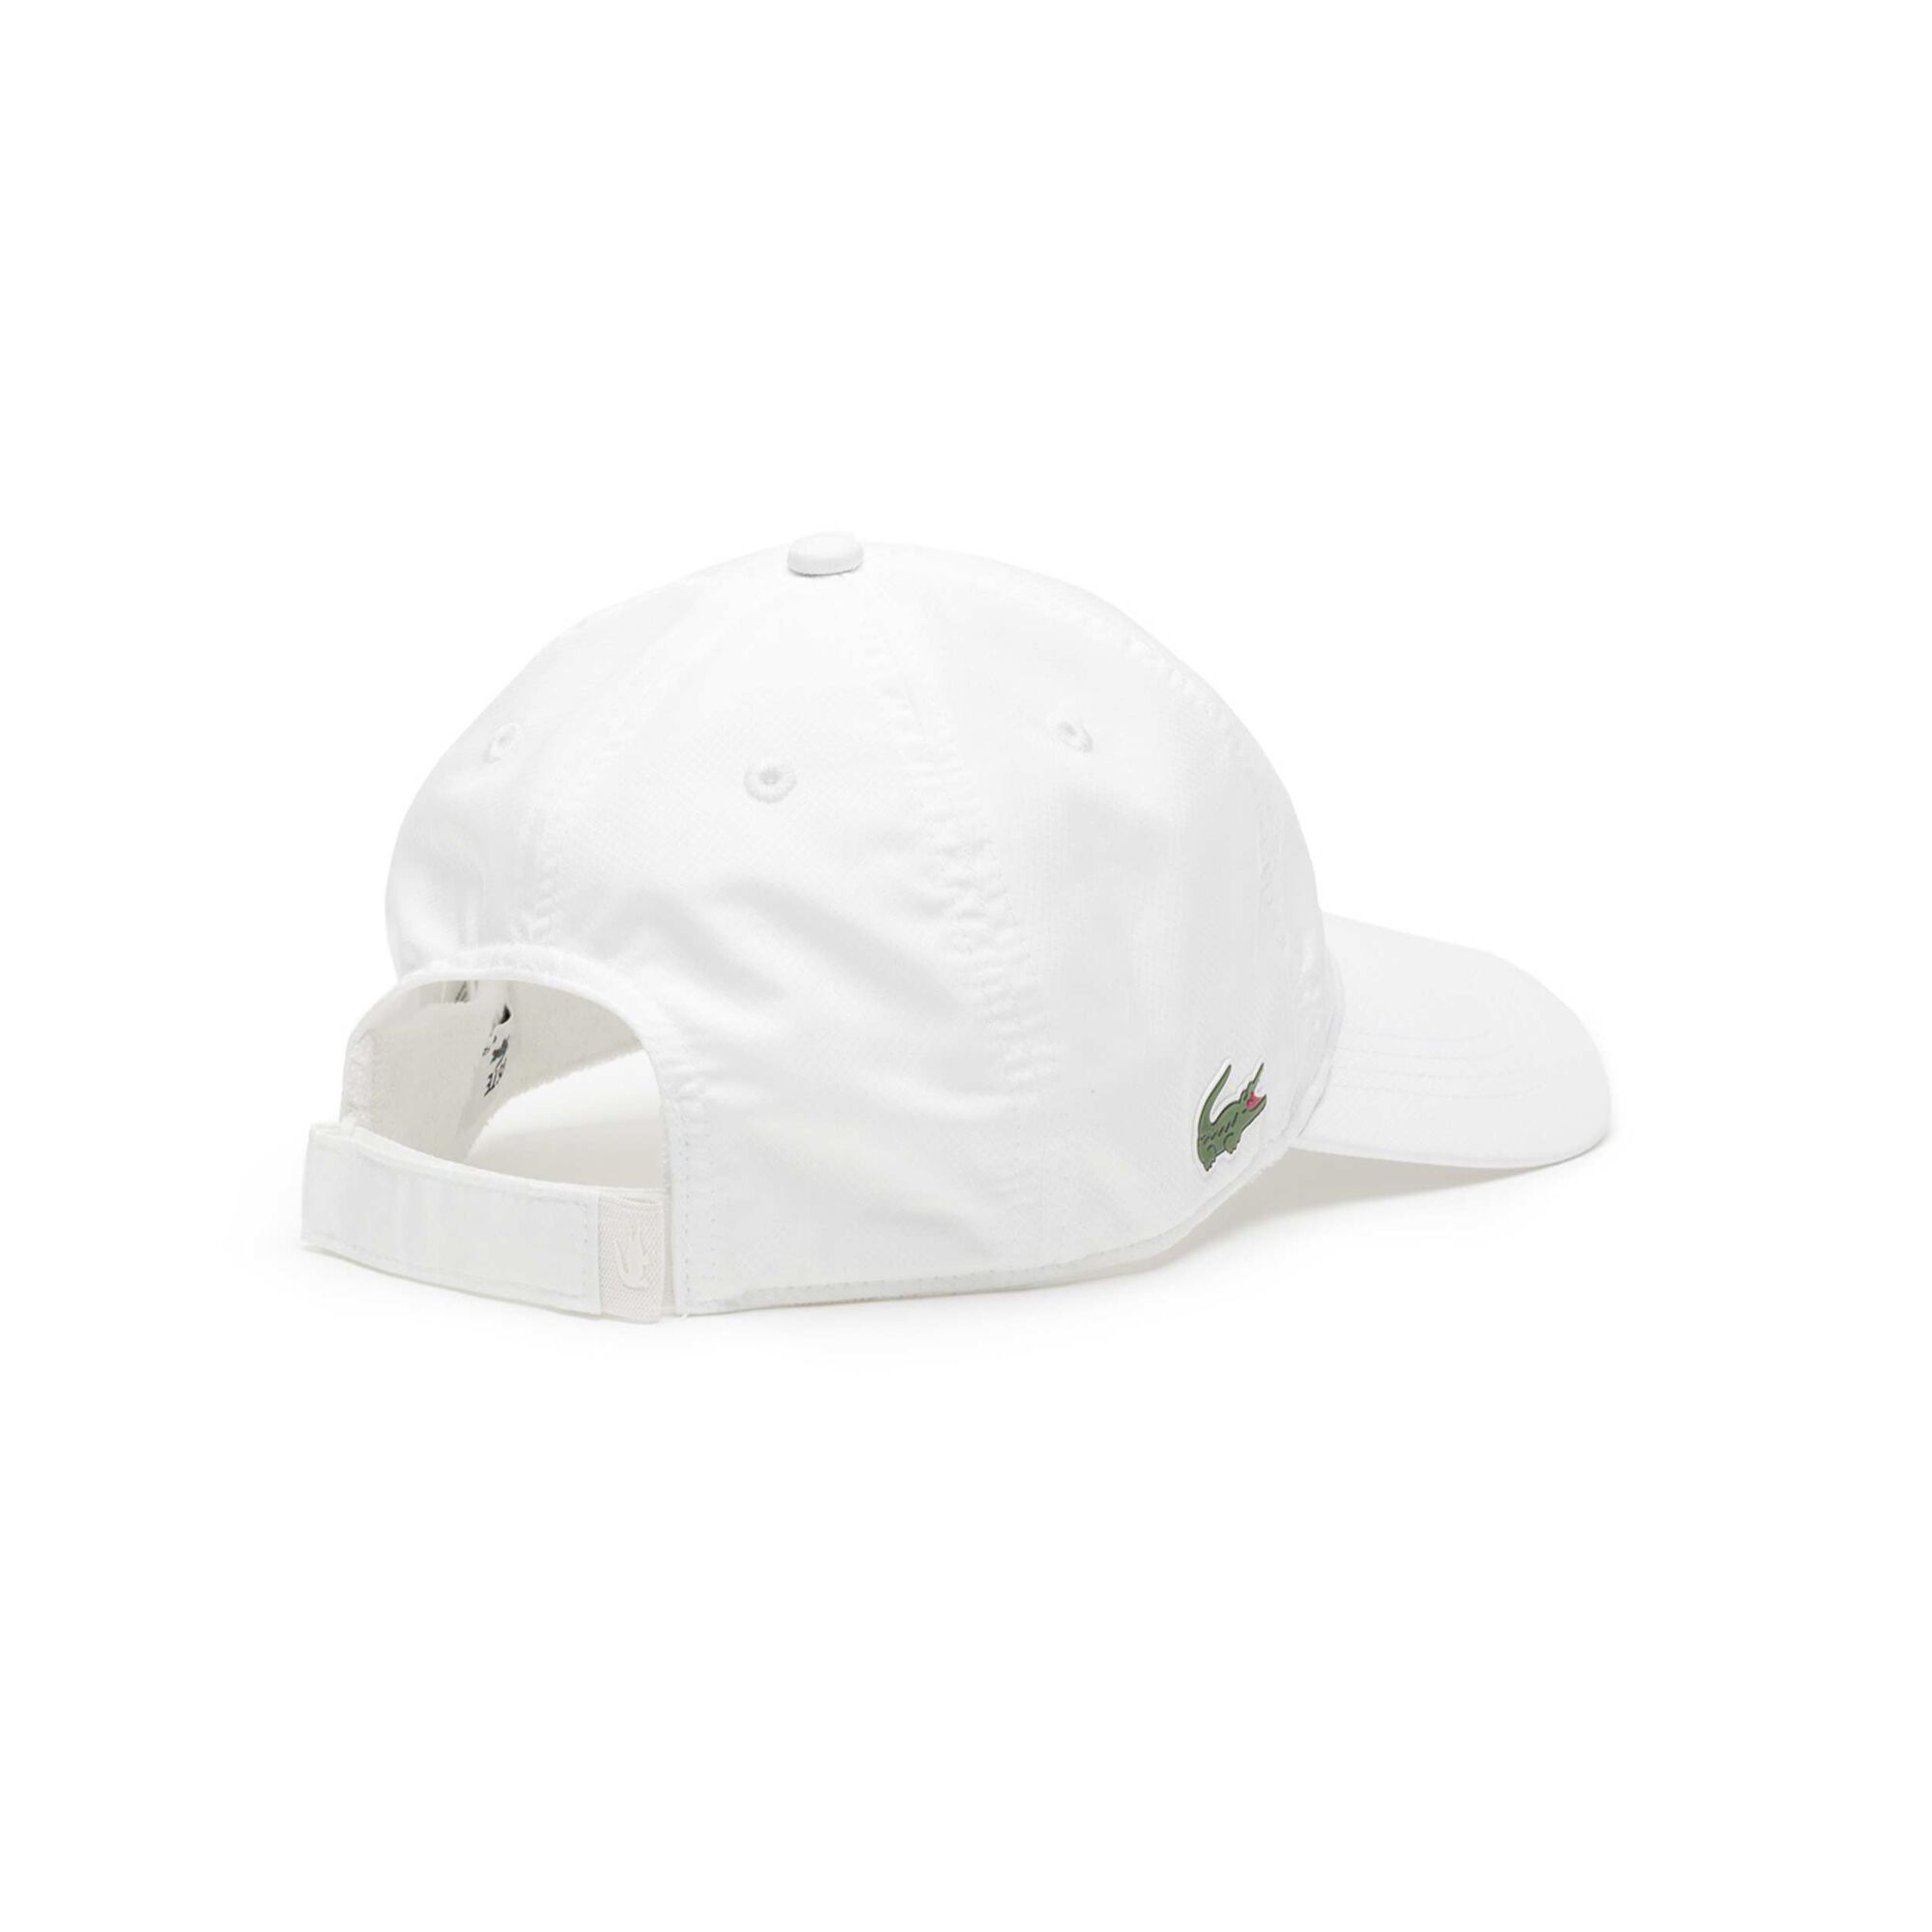 [Elegant] online kaufen Grün Lacoste Tennis-Point Cap - Weiß, 